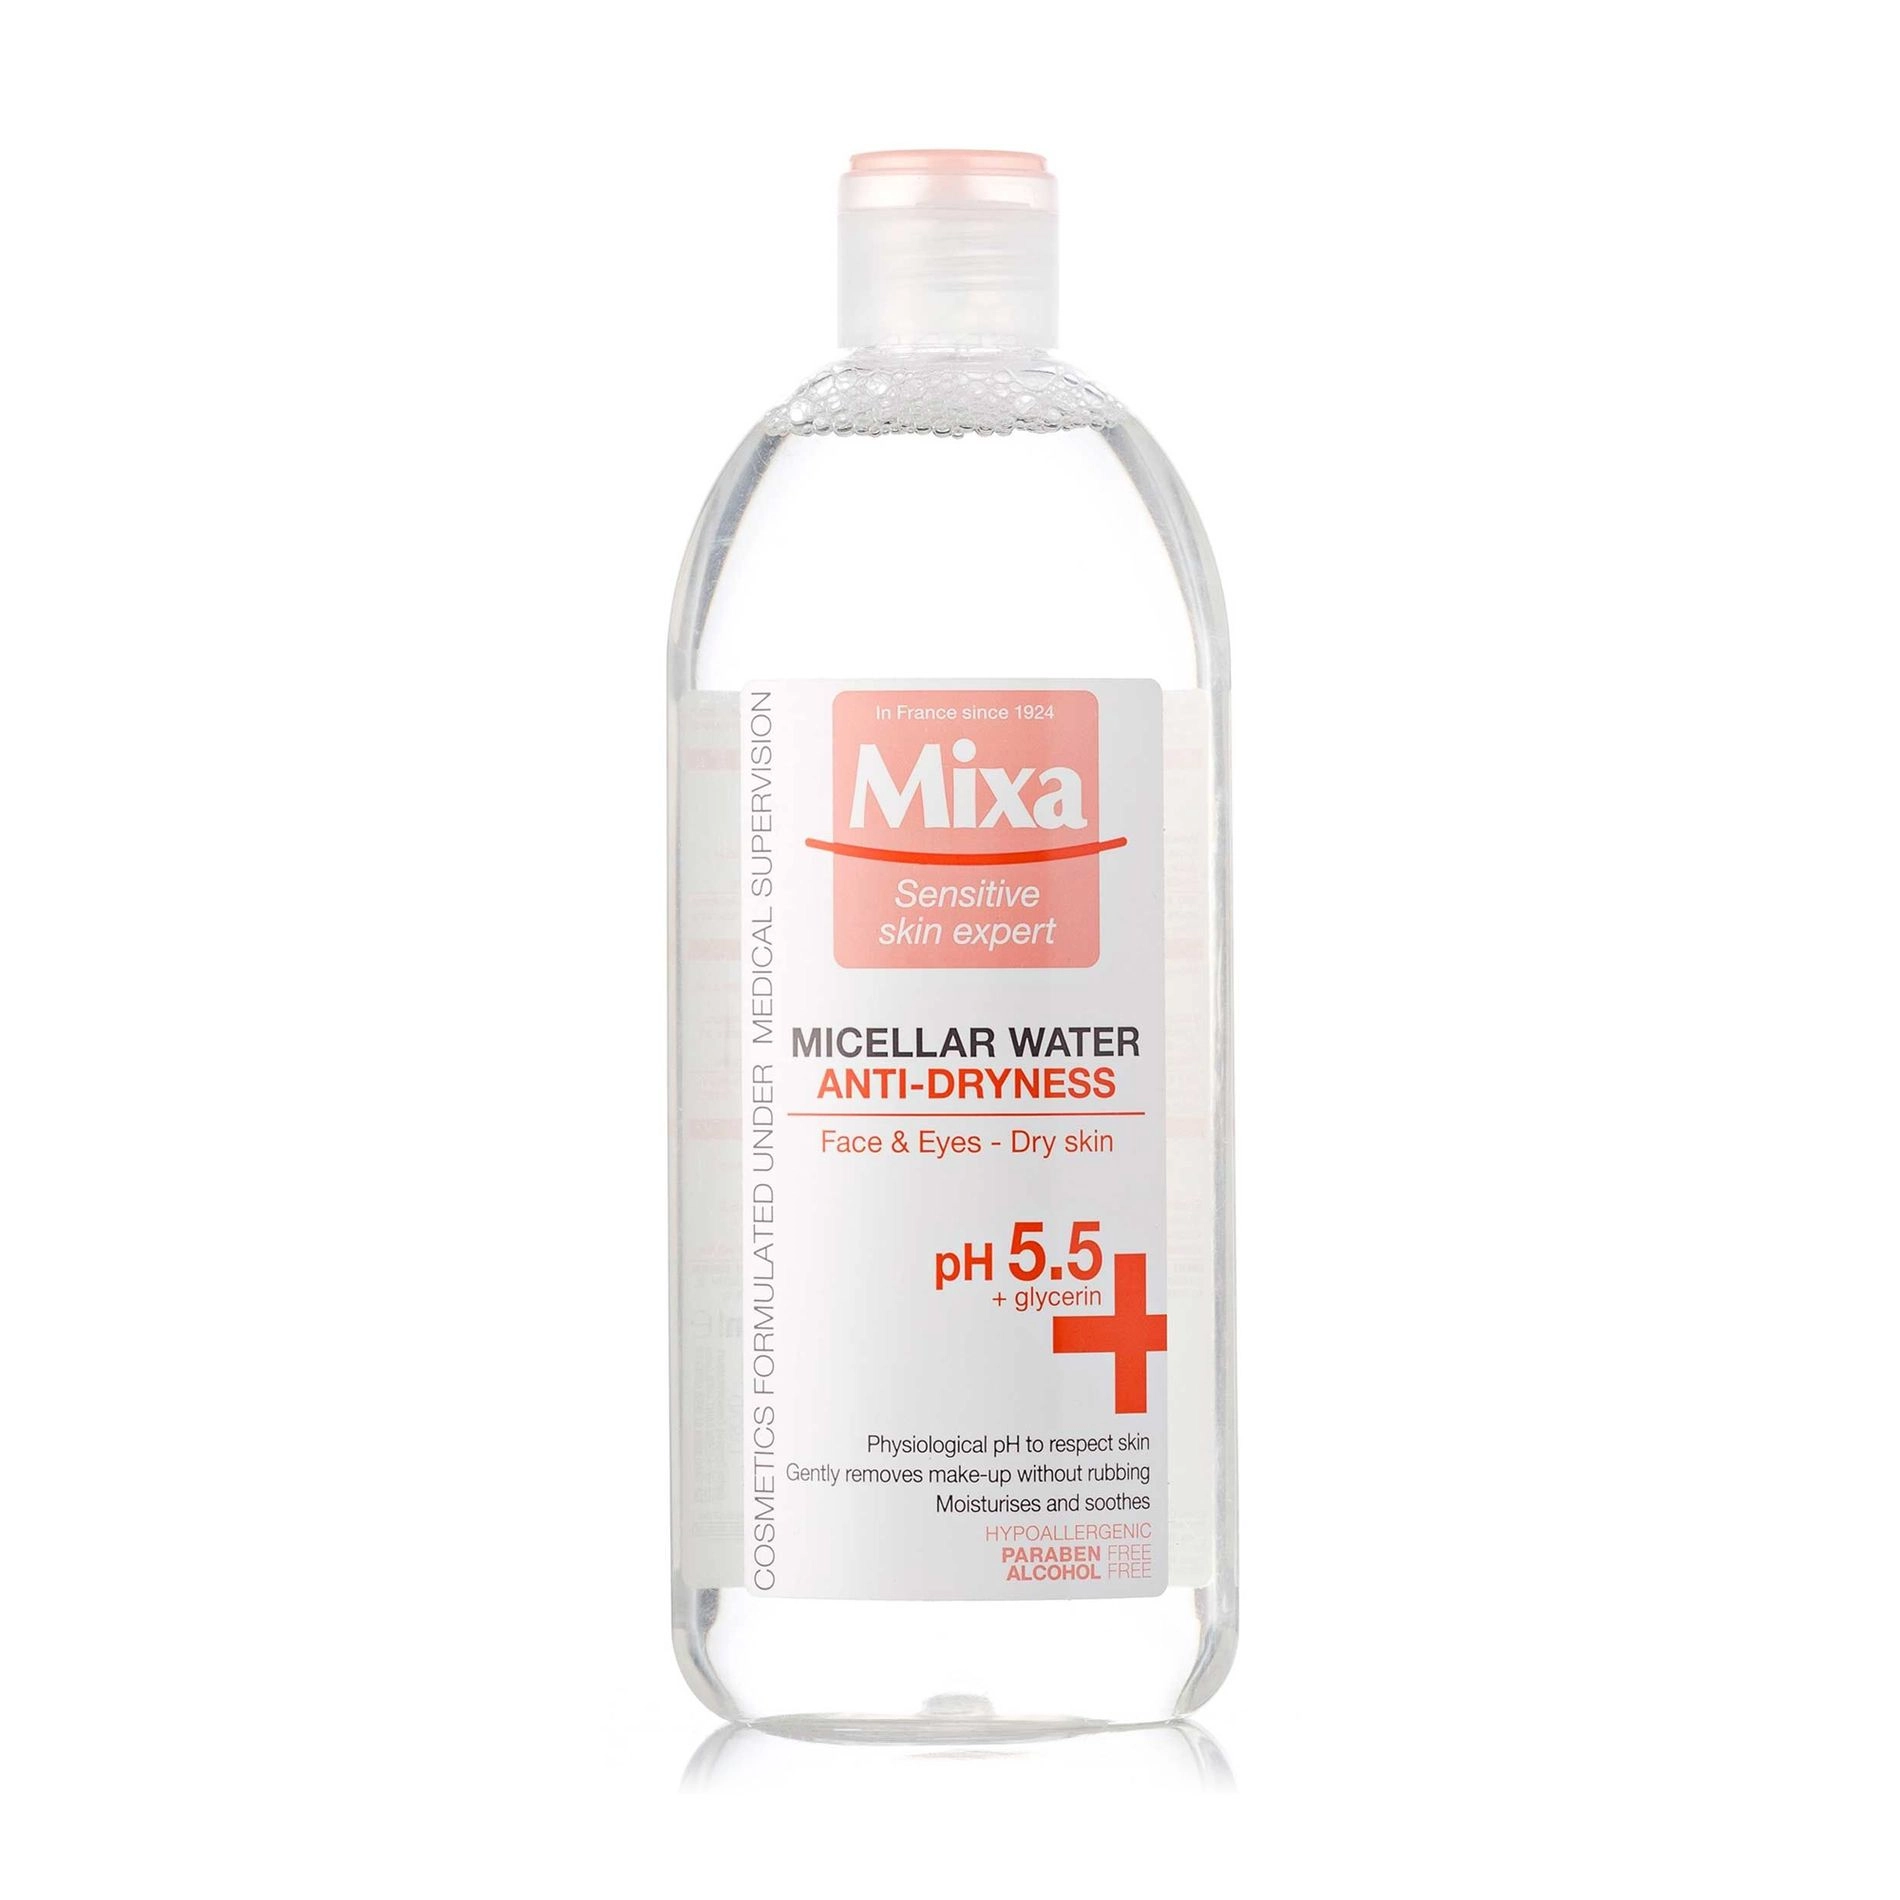 Mixa Міцелярна вода для обличчя Anti-Dryness Micellar Water для сухої шкіри, pH 5.5, 400 мл - фото N1